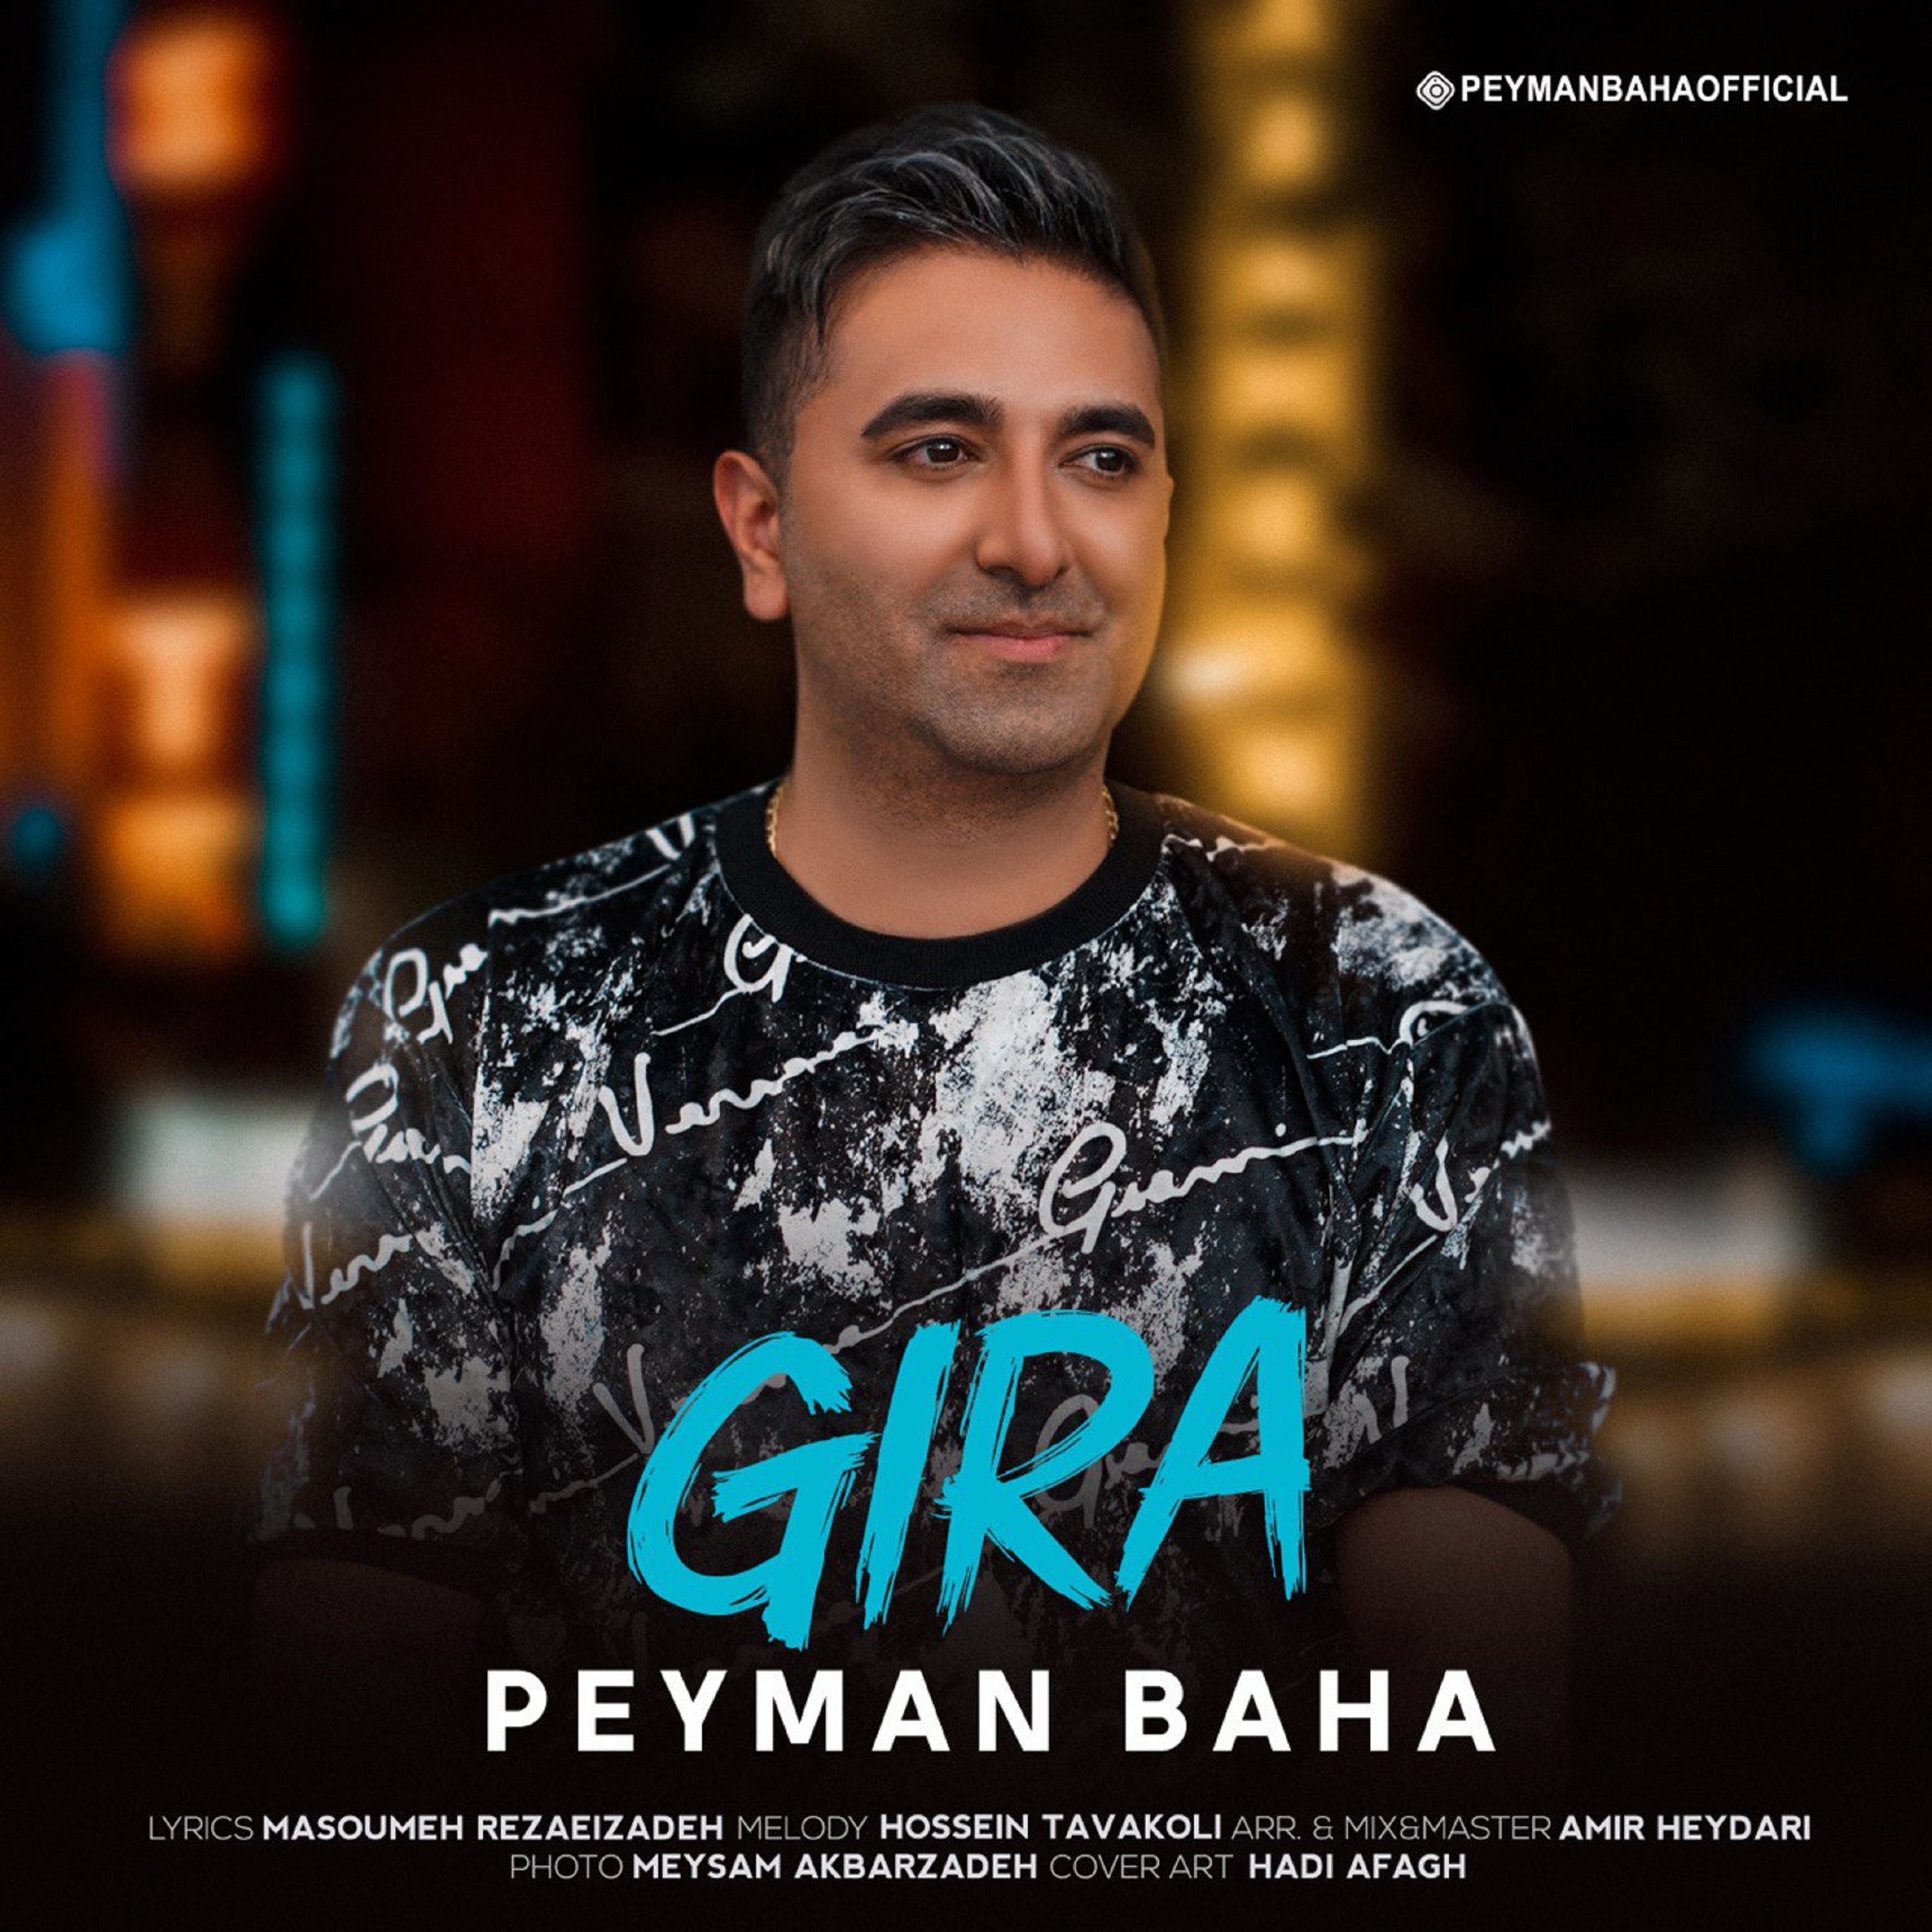  دانلود آهنگ جدید پیمان بها - گیرا | Download New Music By Peyman Baha - Gira